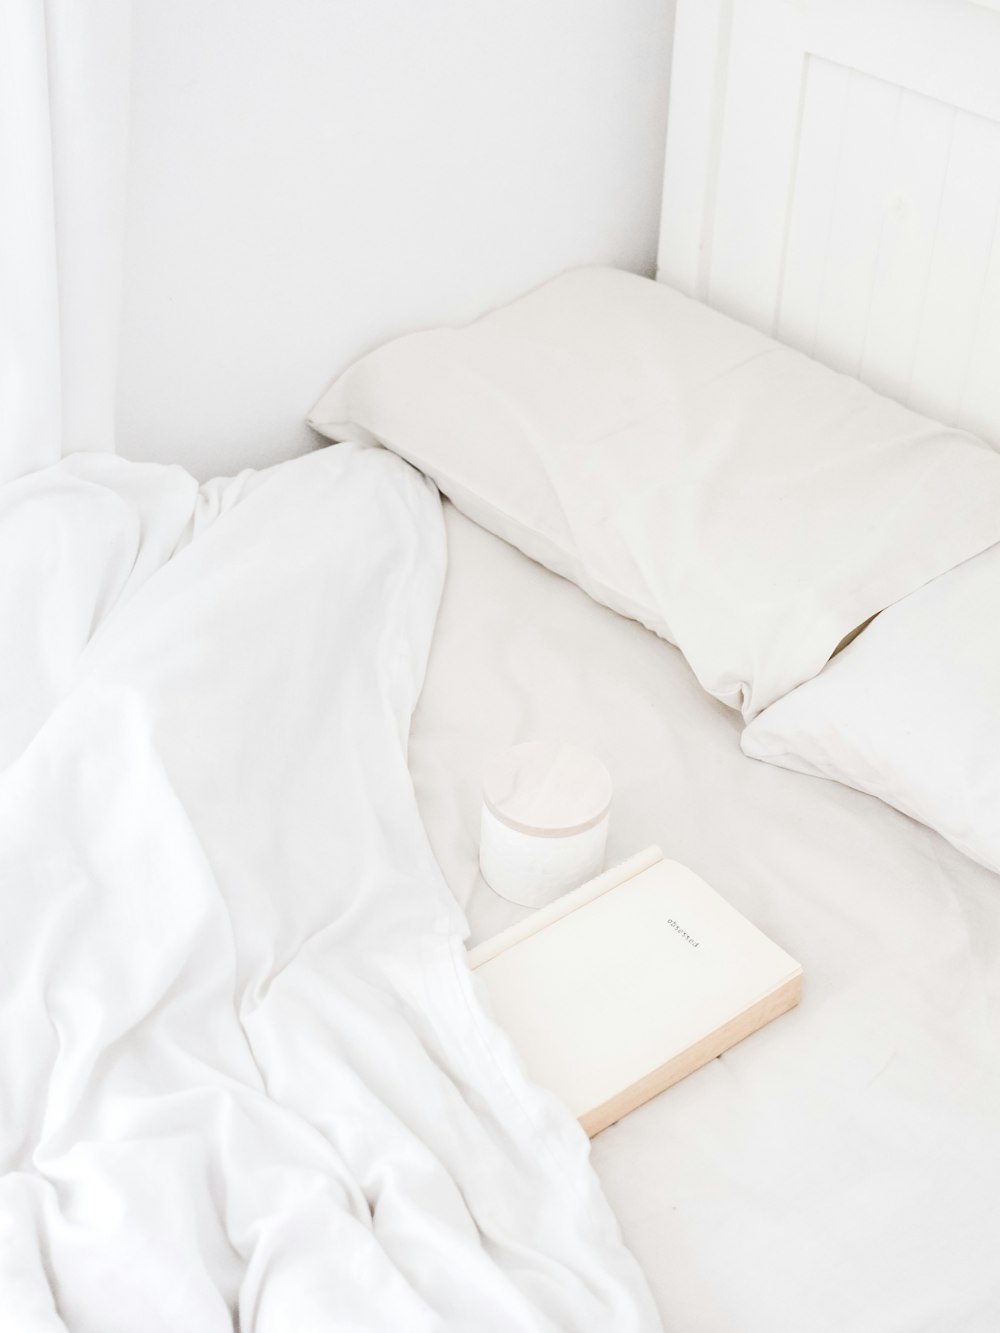 haut-parleur portable blanc sur le lit